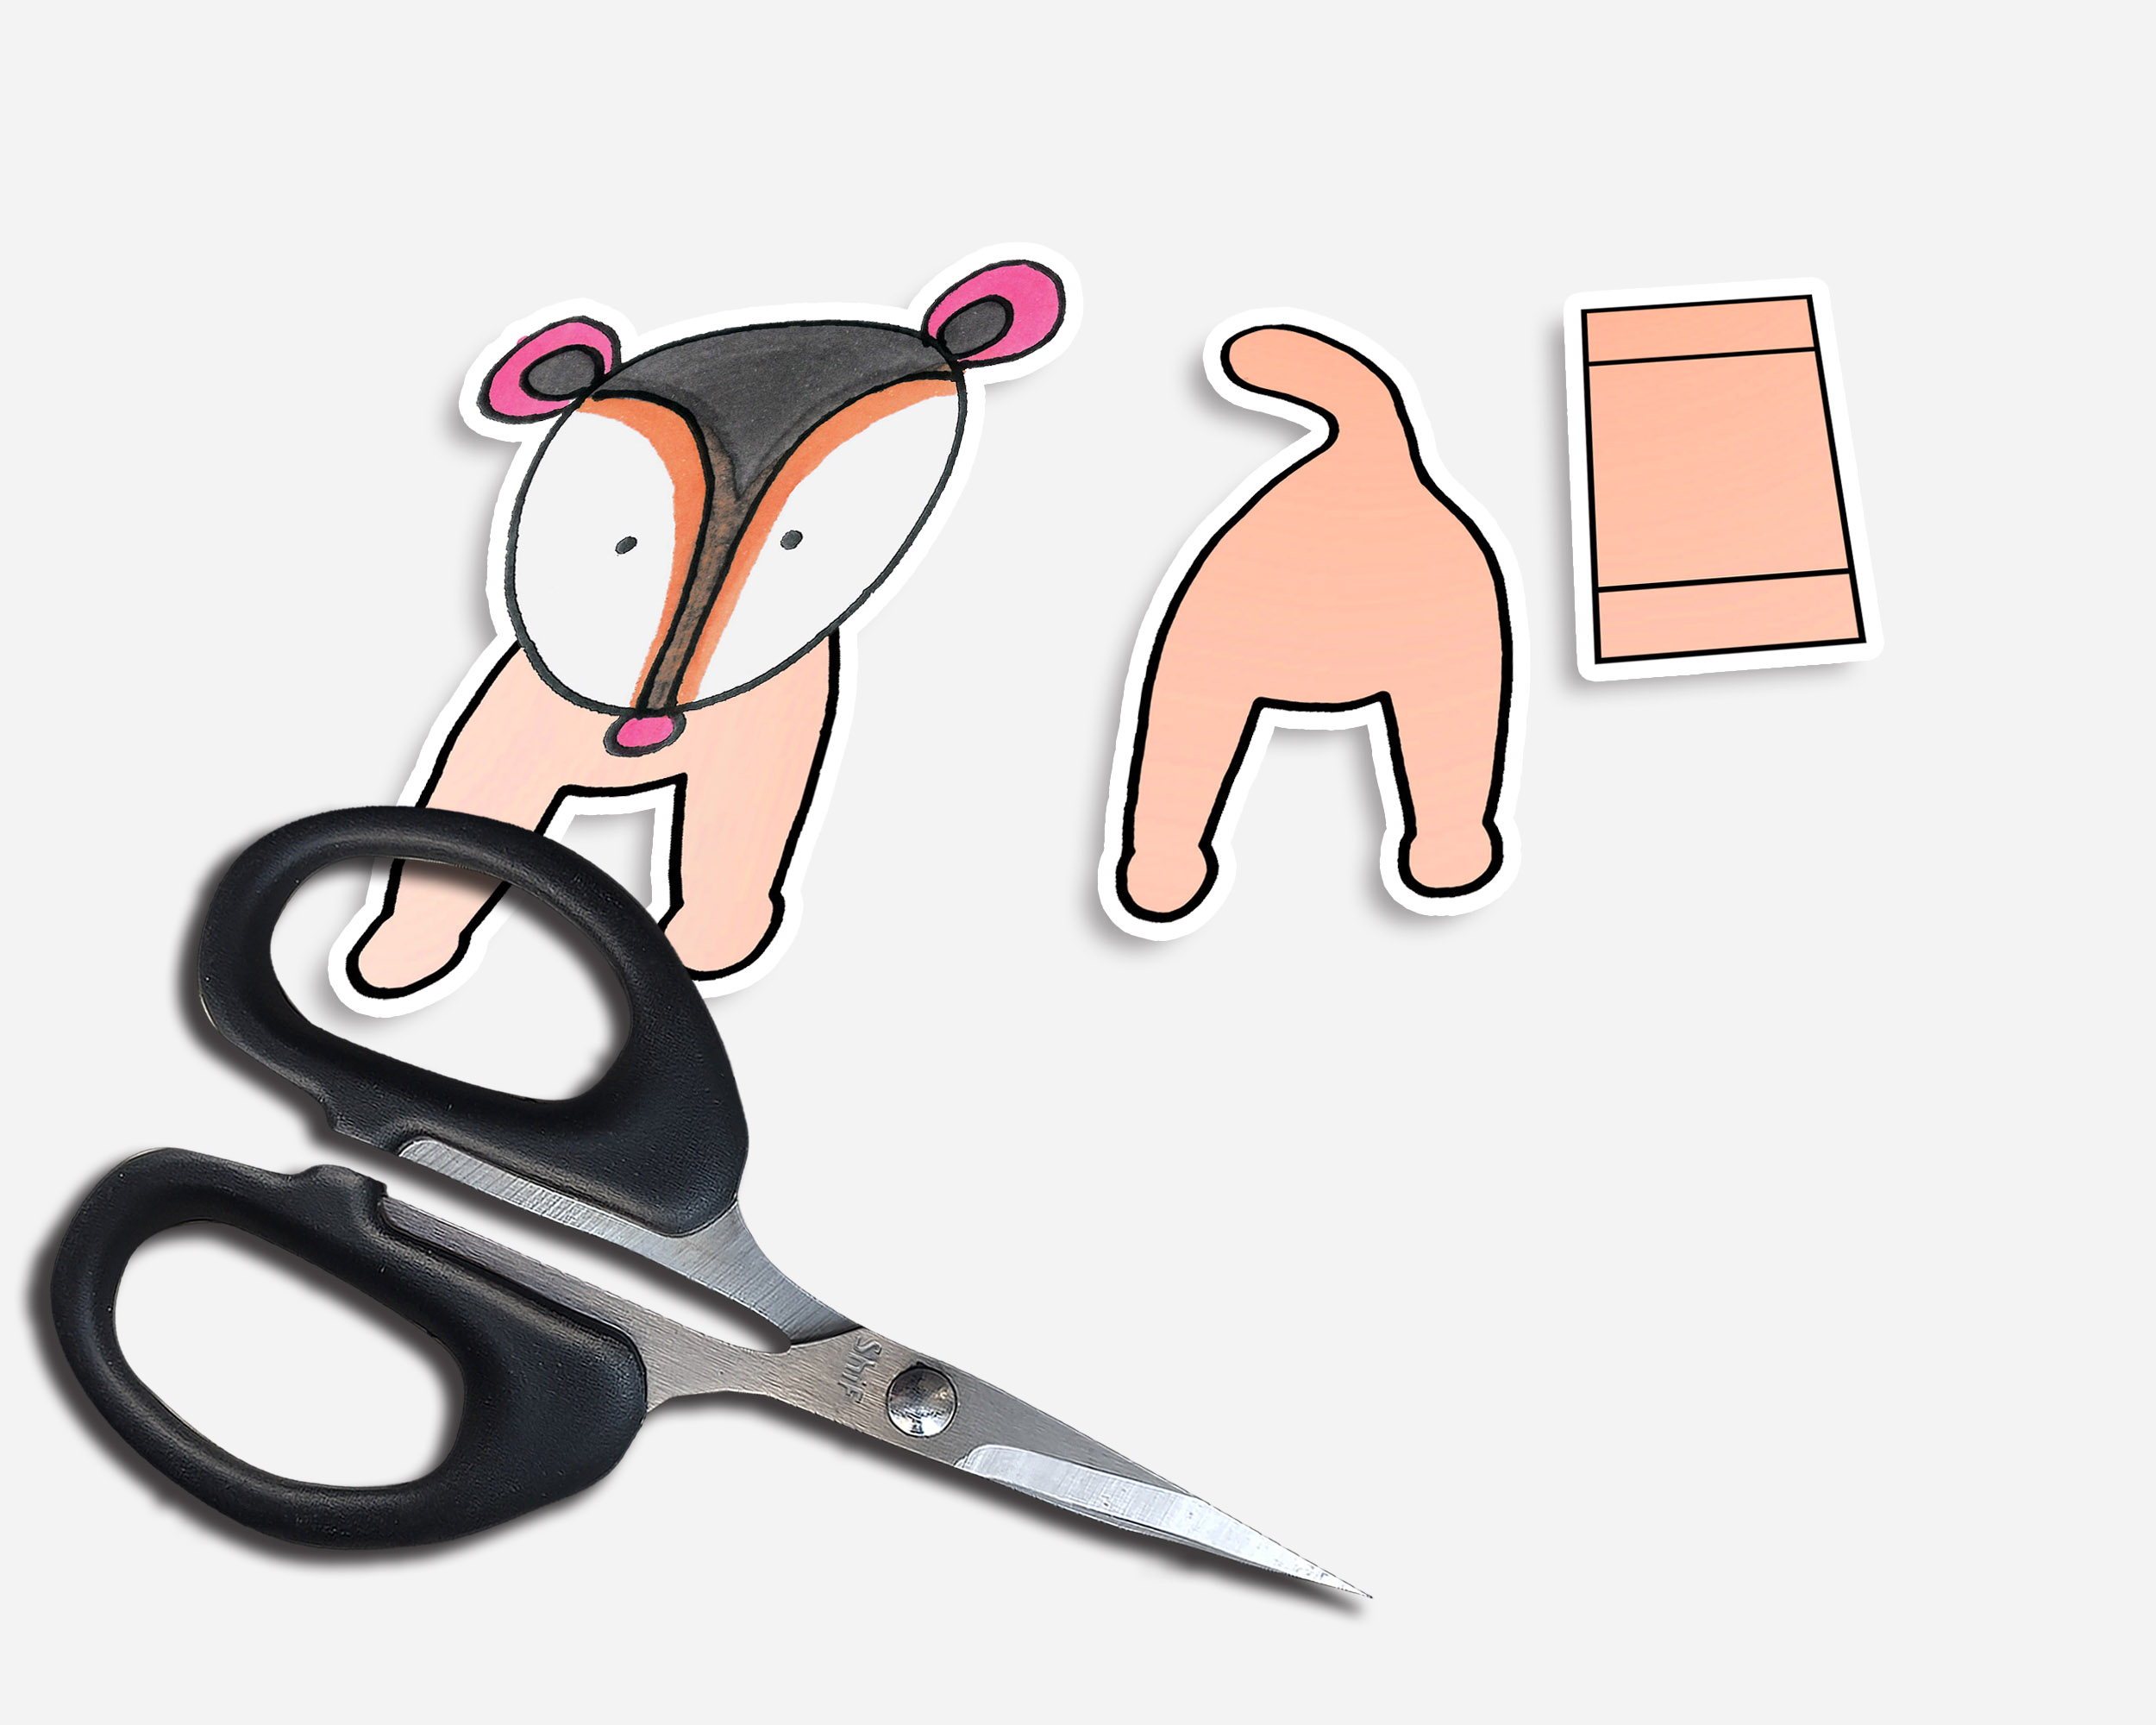 做一个可以拉伸的简单又漂亮小动物折纸贺卡果子狸折叠手工制作